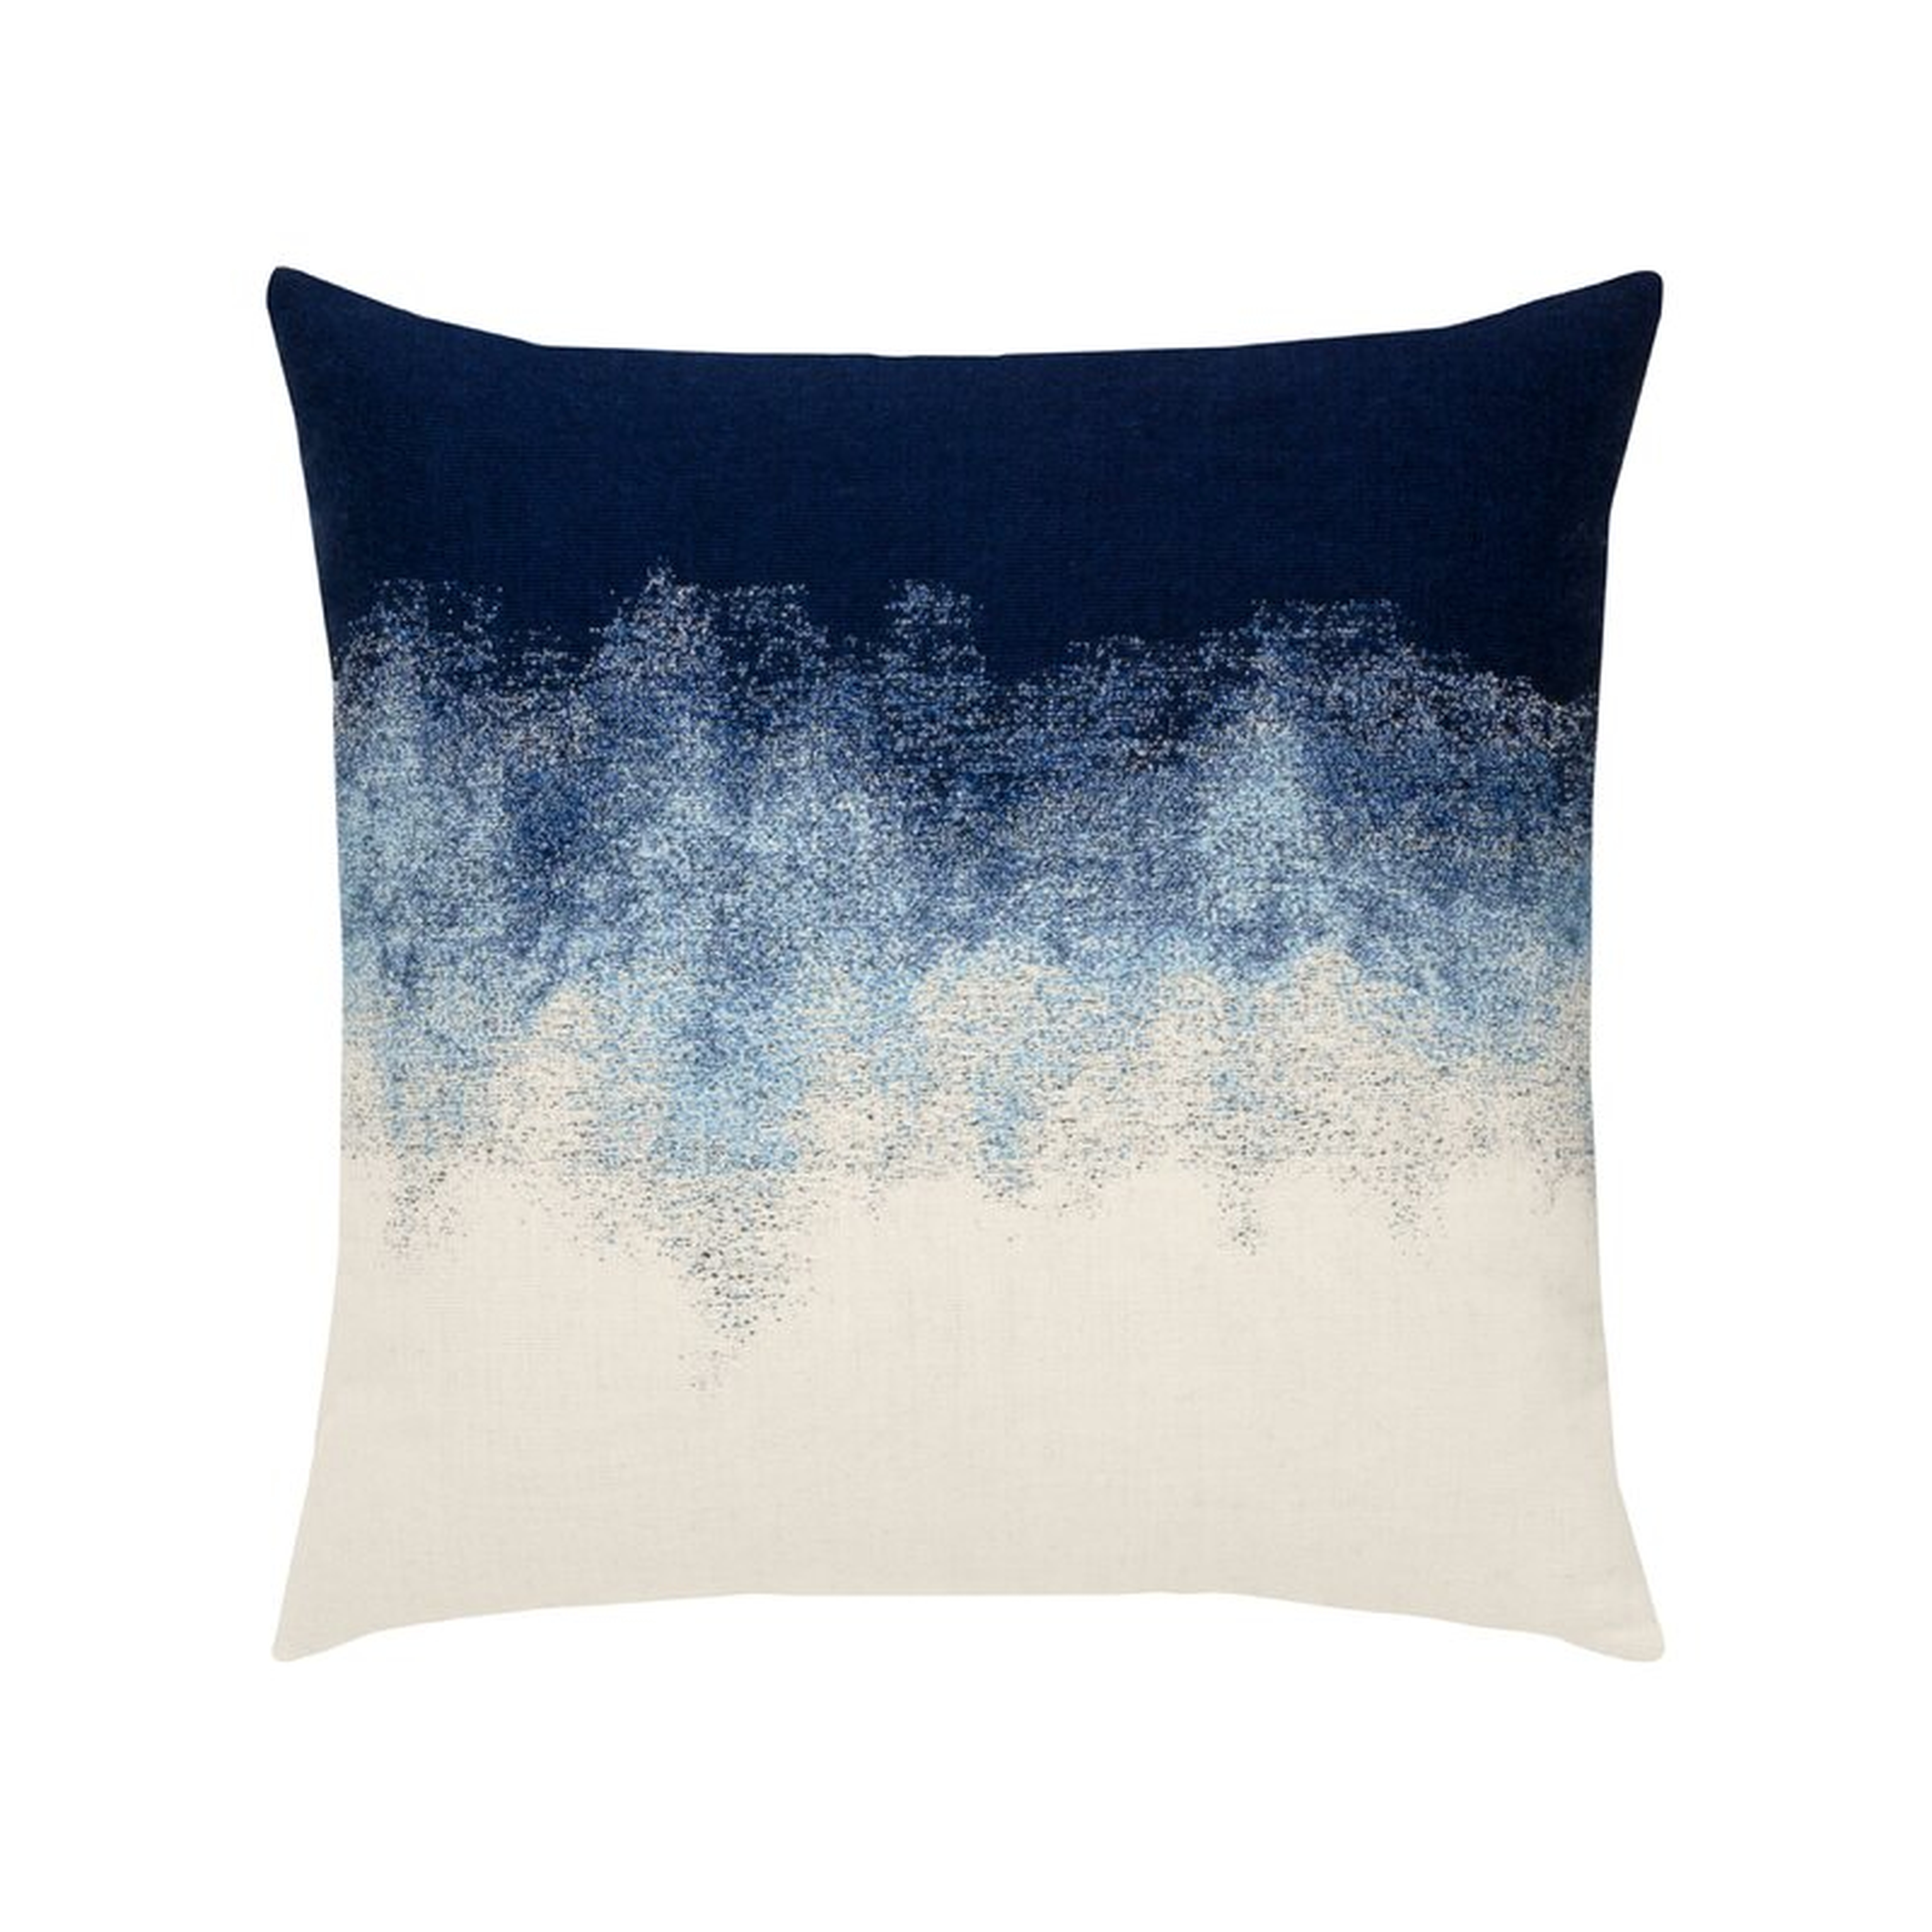 Artful Outdoor Square Sunbrella® Pillow Cover and Insert - Perigold